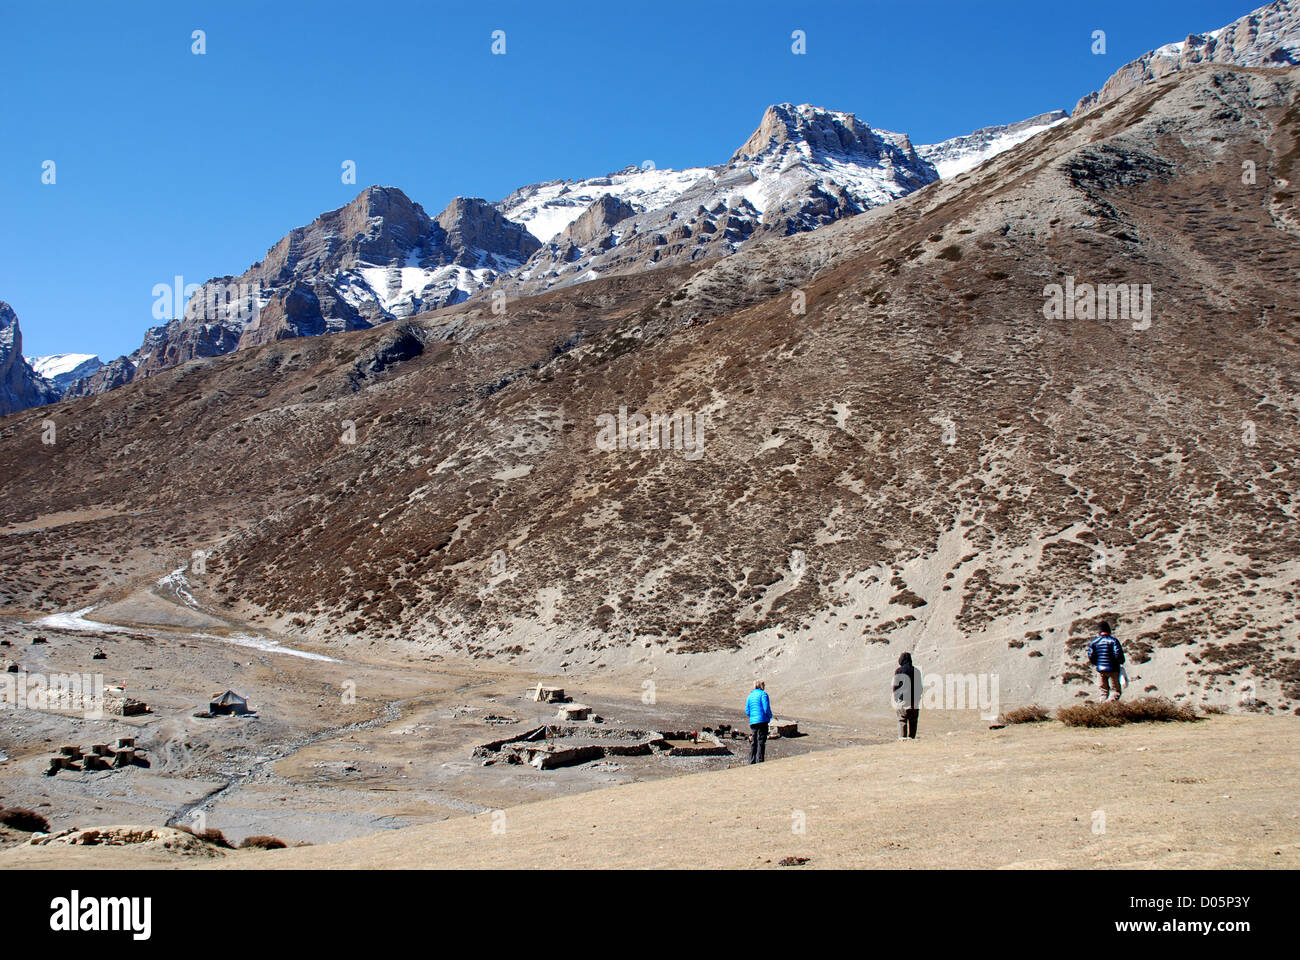 Il trekking guarda verso la montagna del picco di cristallo che costituisce il centro spirituale del Dolpo buddista regione del Nepal Foto Stock